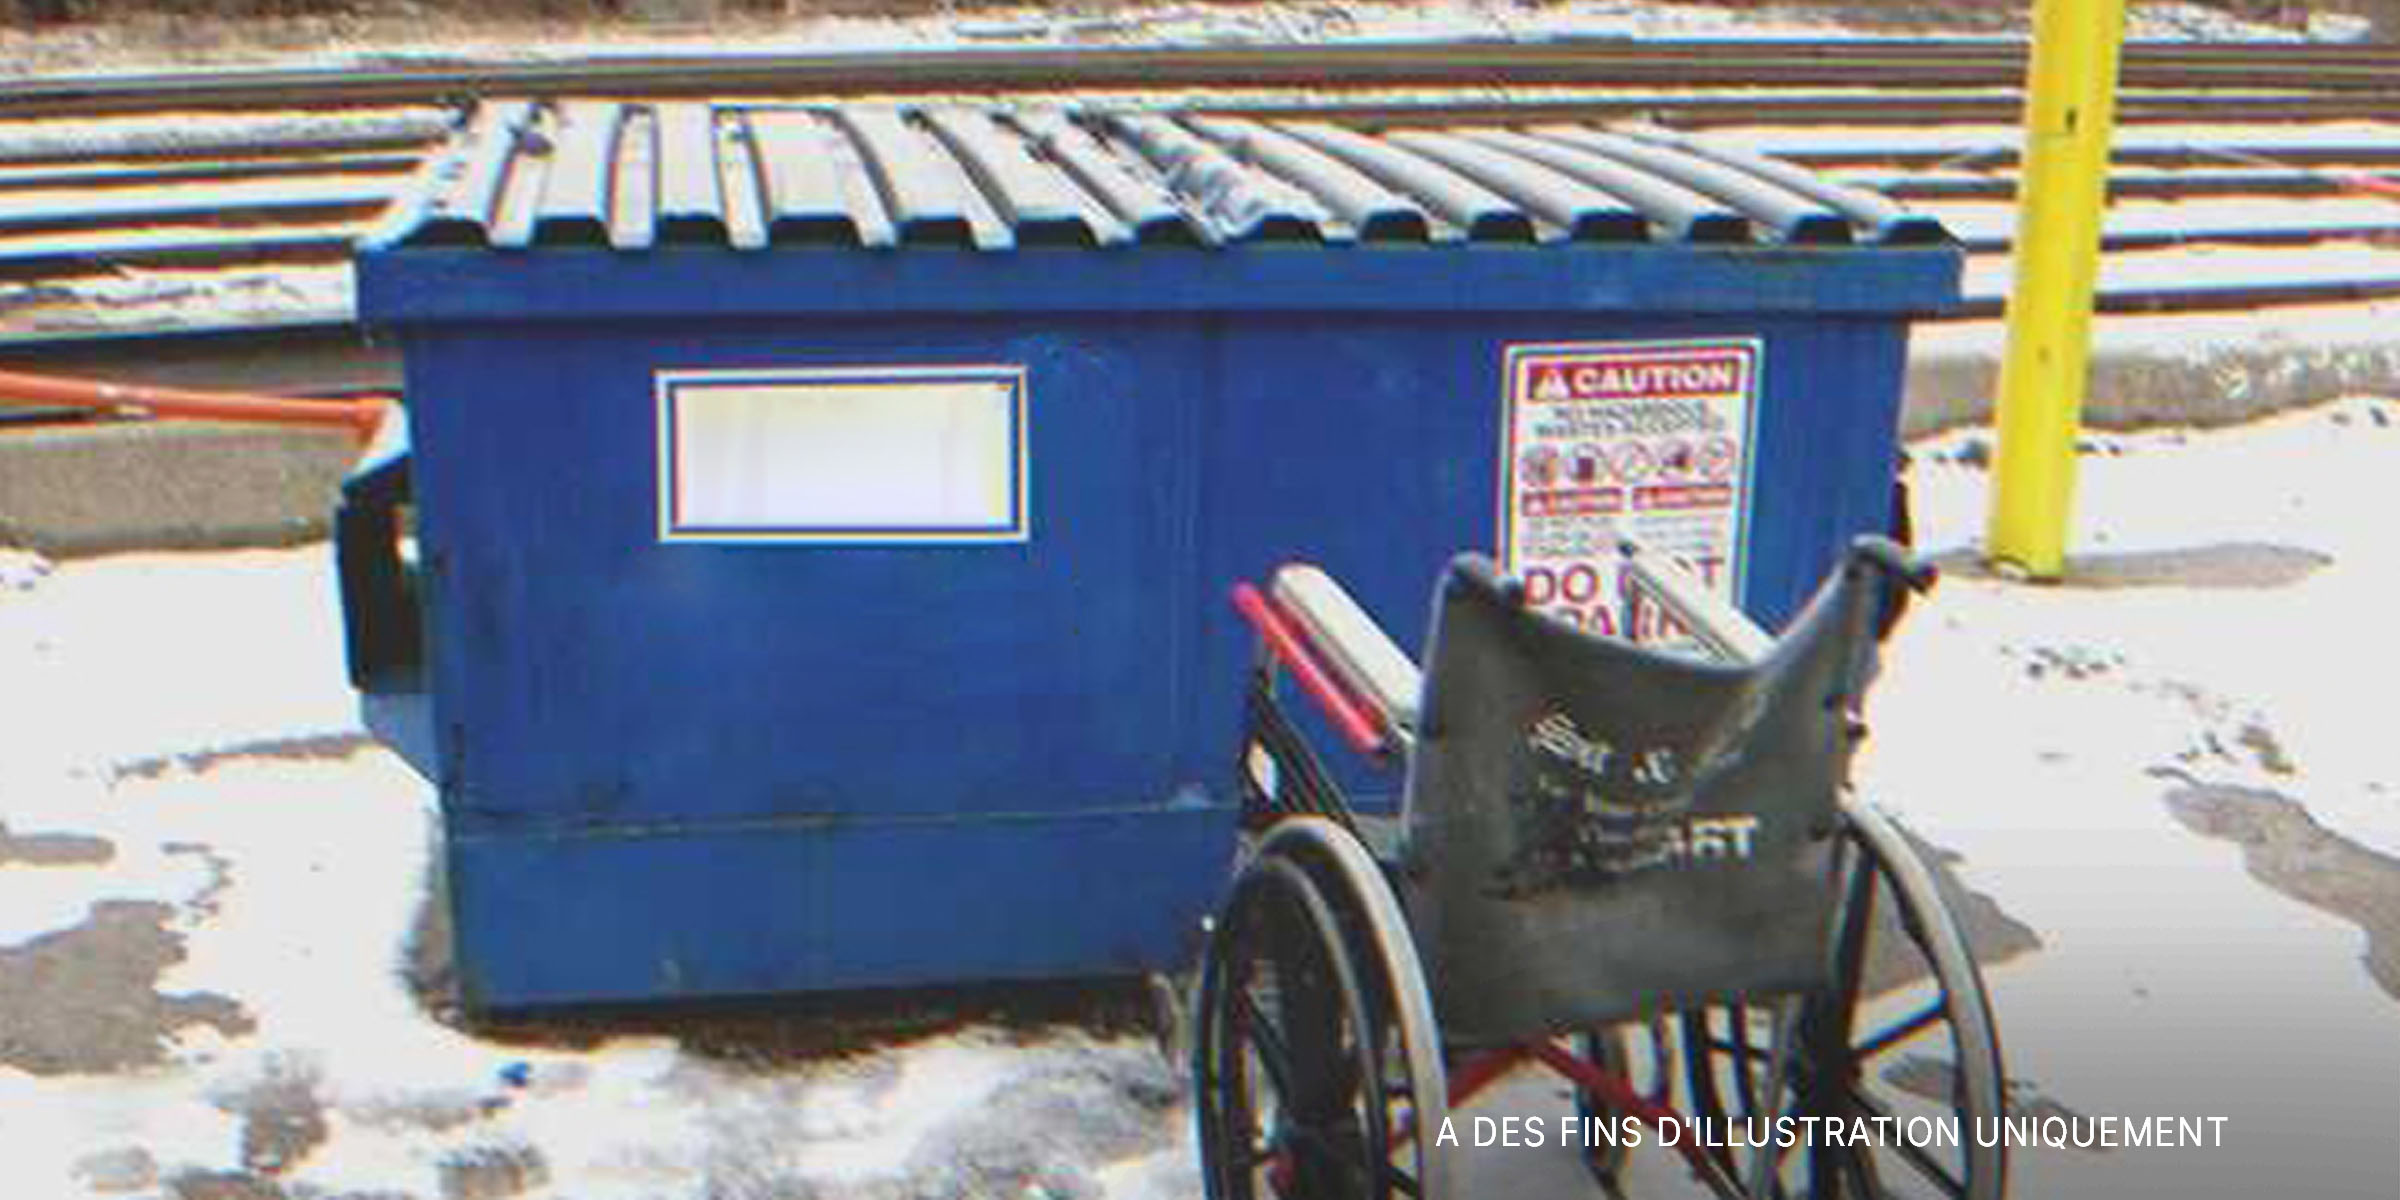 Un fauteuil roulant près d'une benne à ordure | Source : Shutterstock